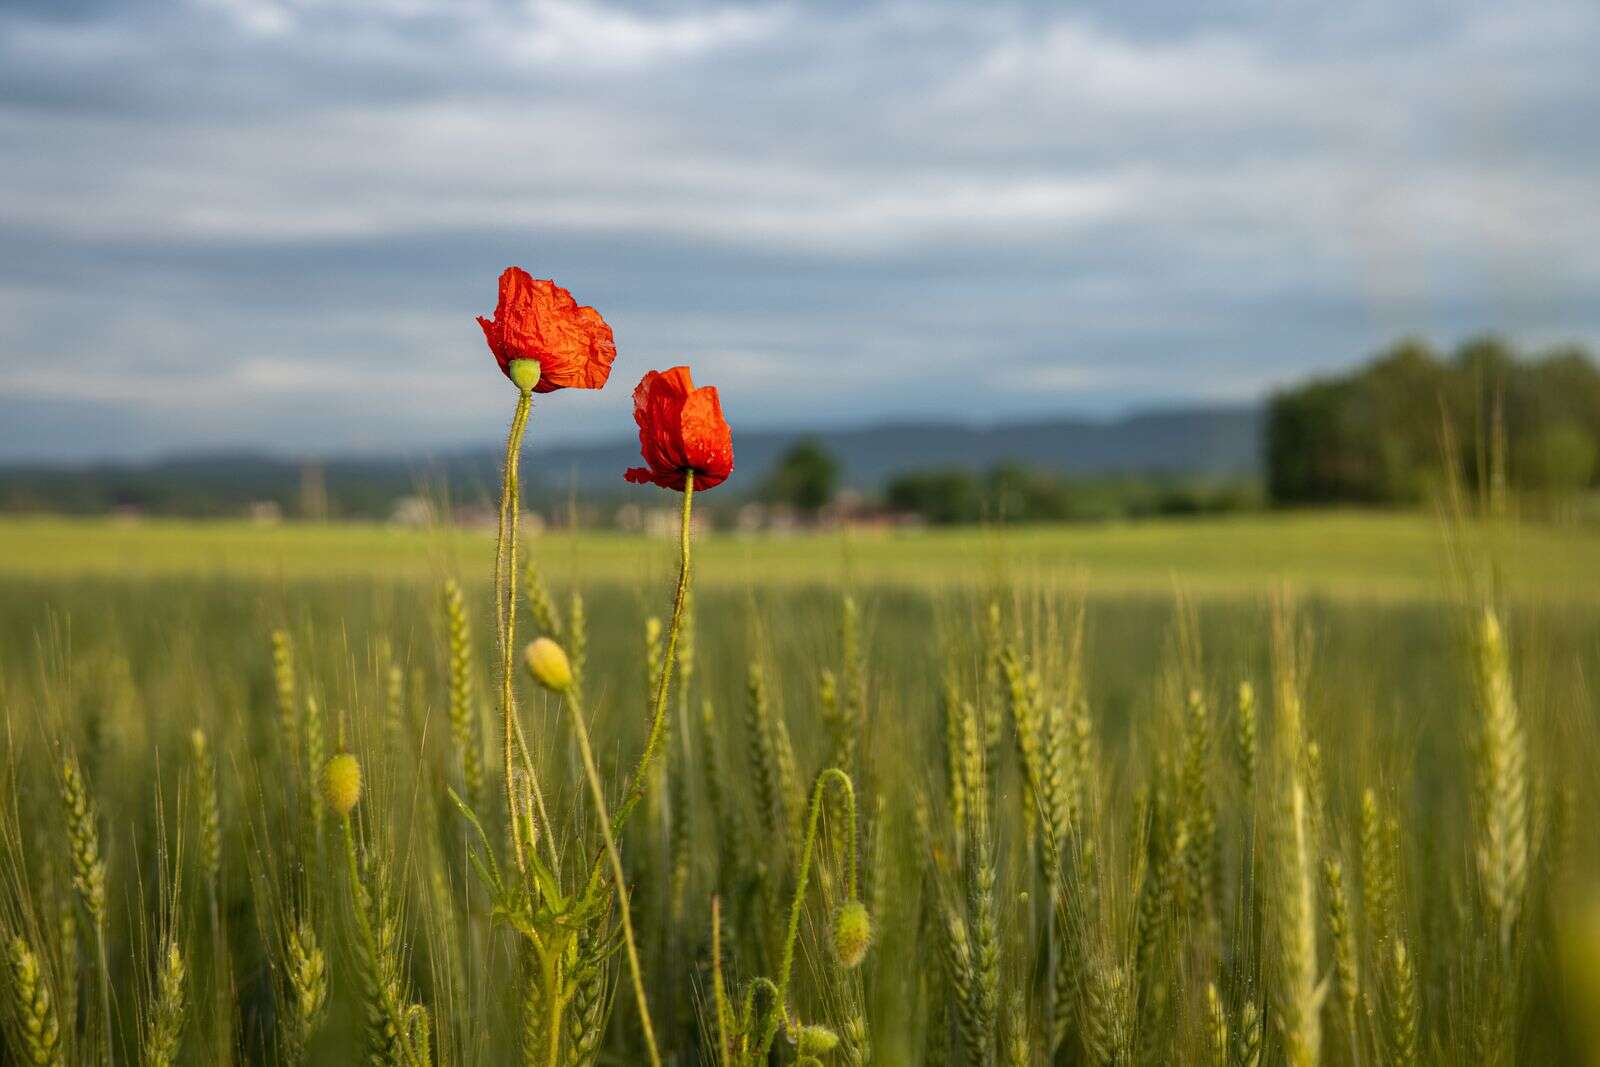 Flanders Field Poppy